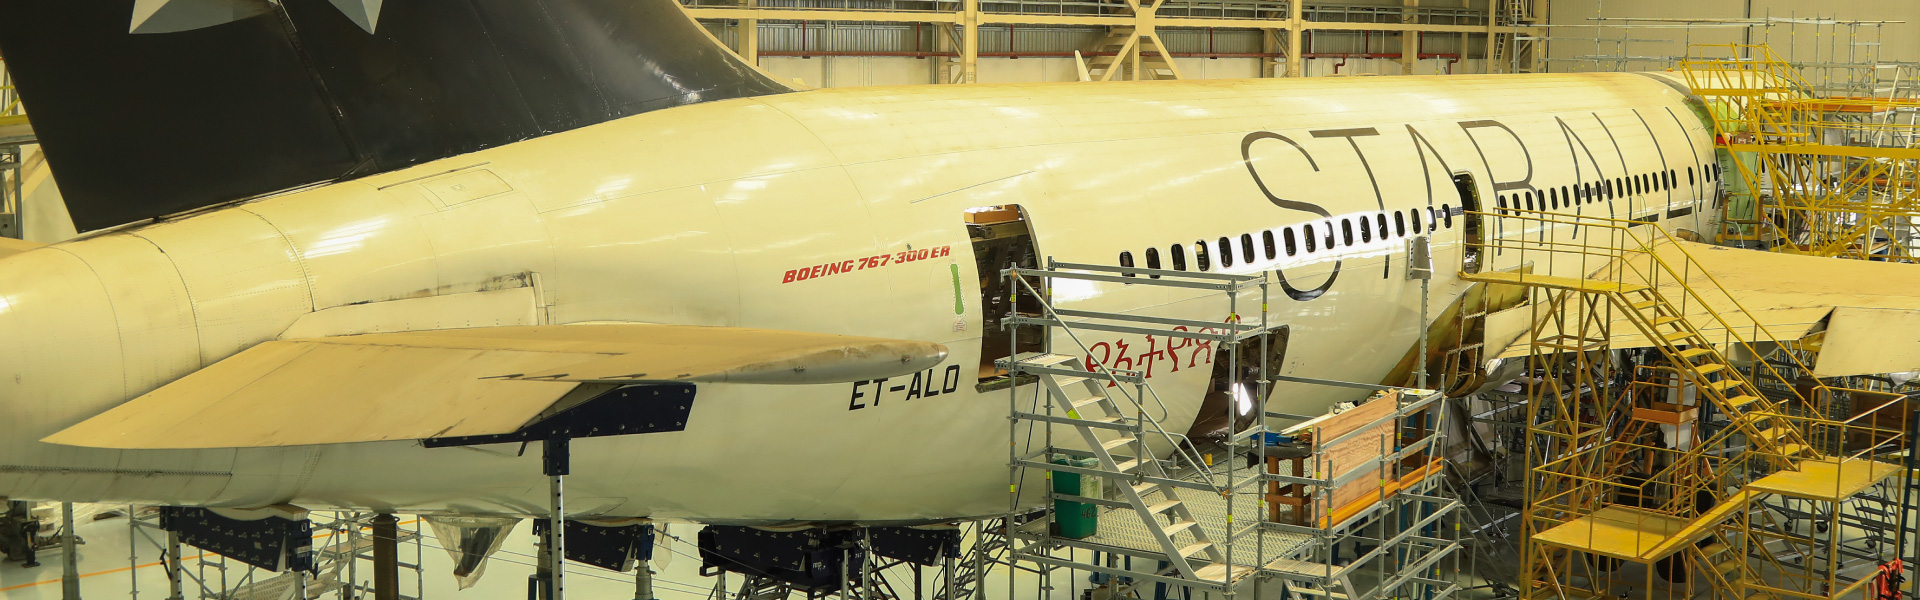 Ethiopian Airlines MRO